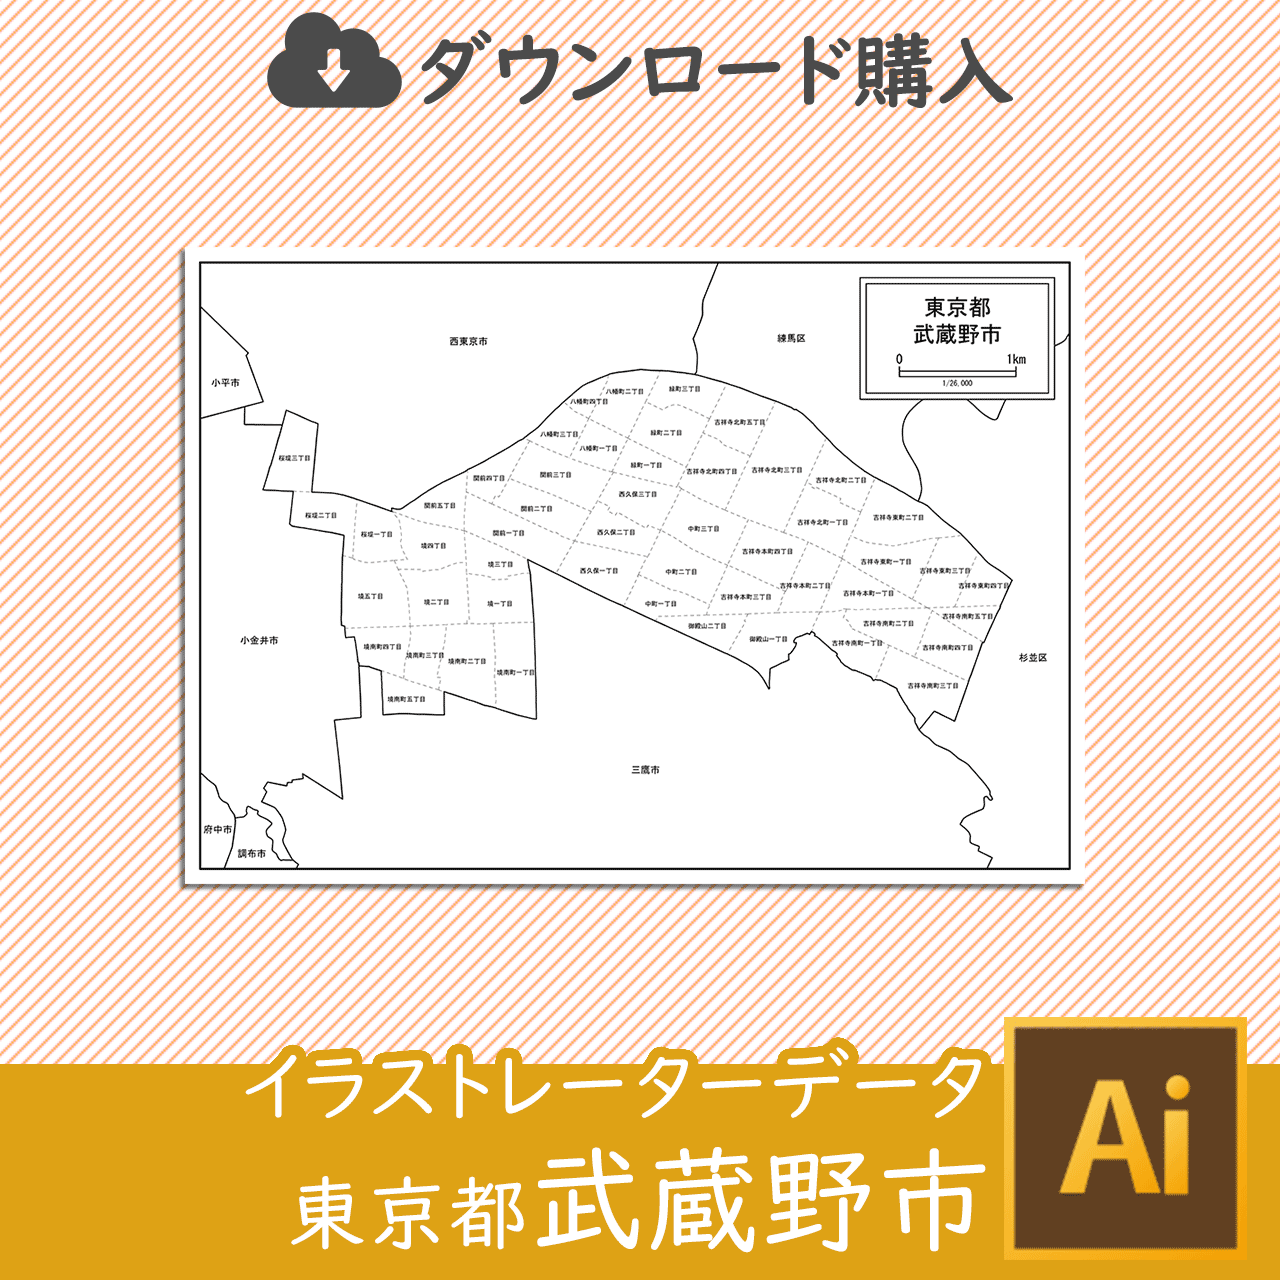 武蔵野市の白地図のサムネイル画像